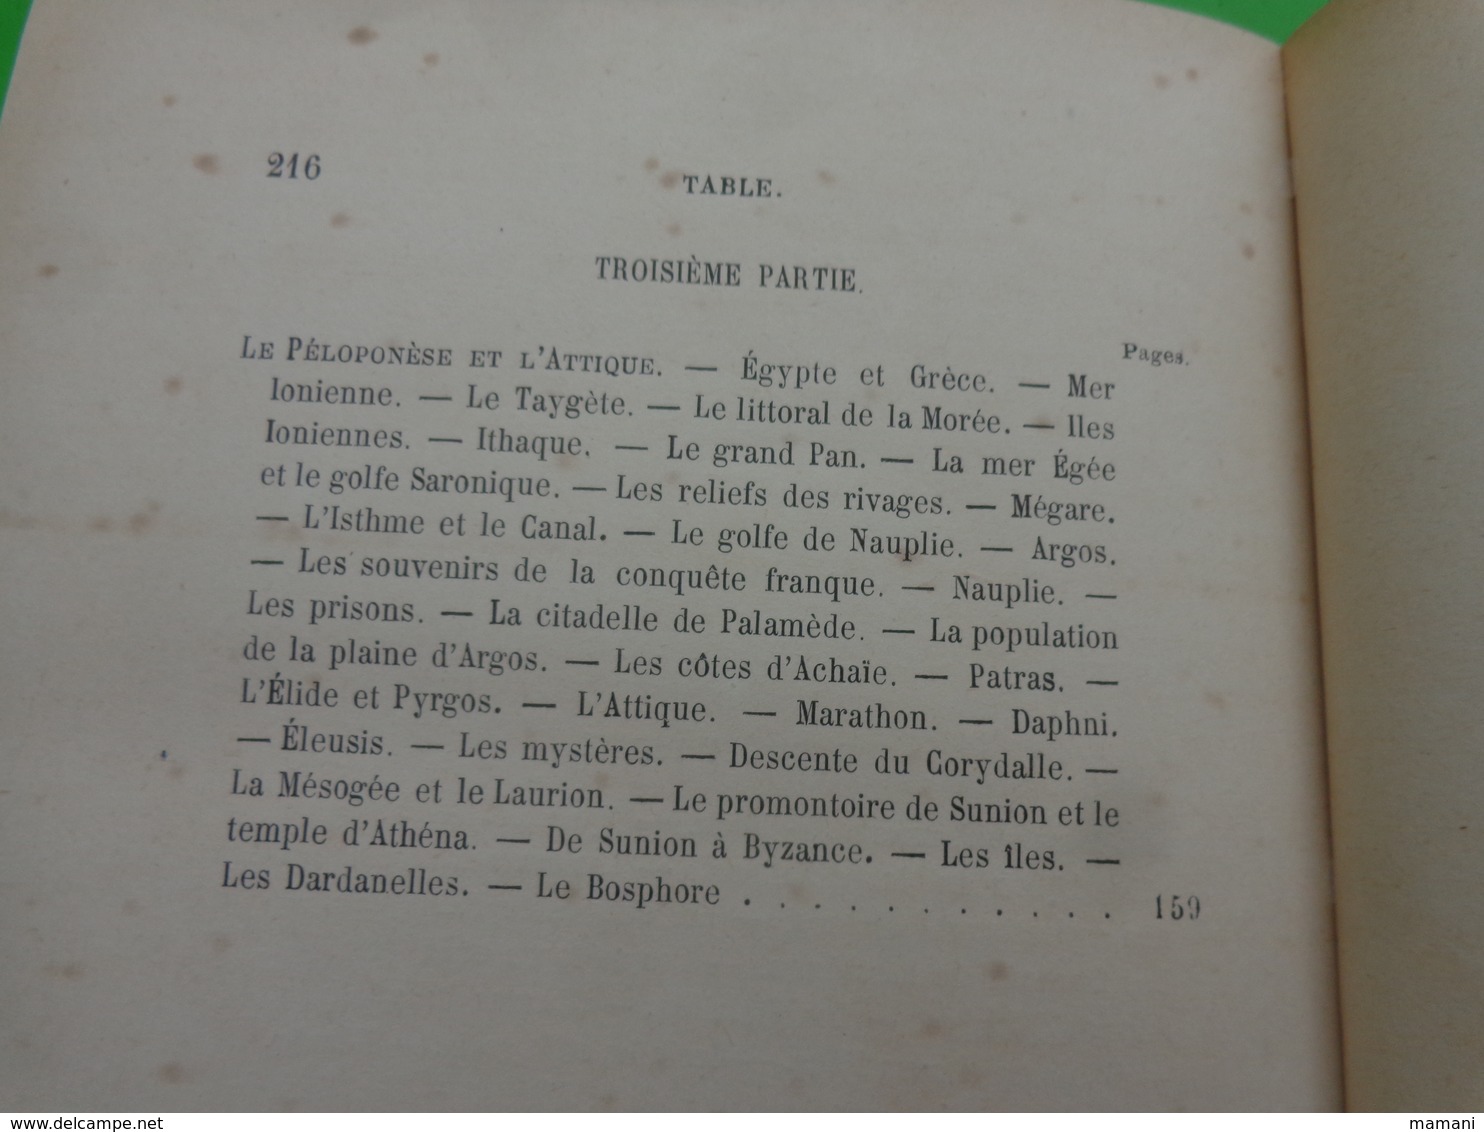 livre lycee buffon eleve alberge-etudes sur la grece -beaux arts -les sites et la population -gabriel thomas-1895